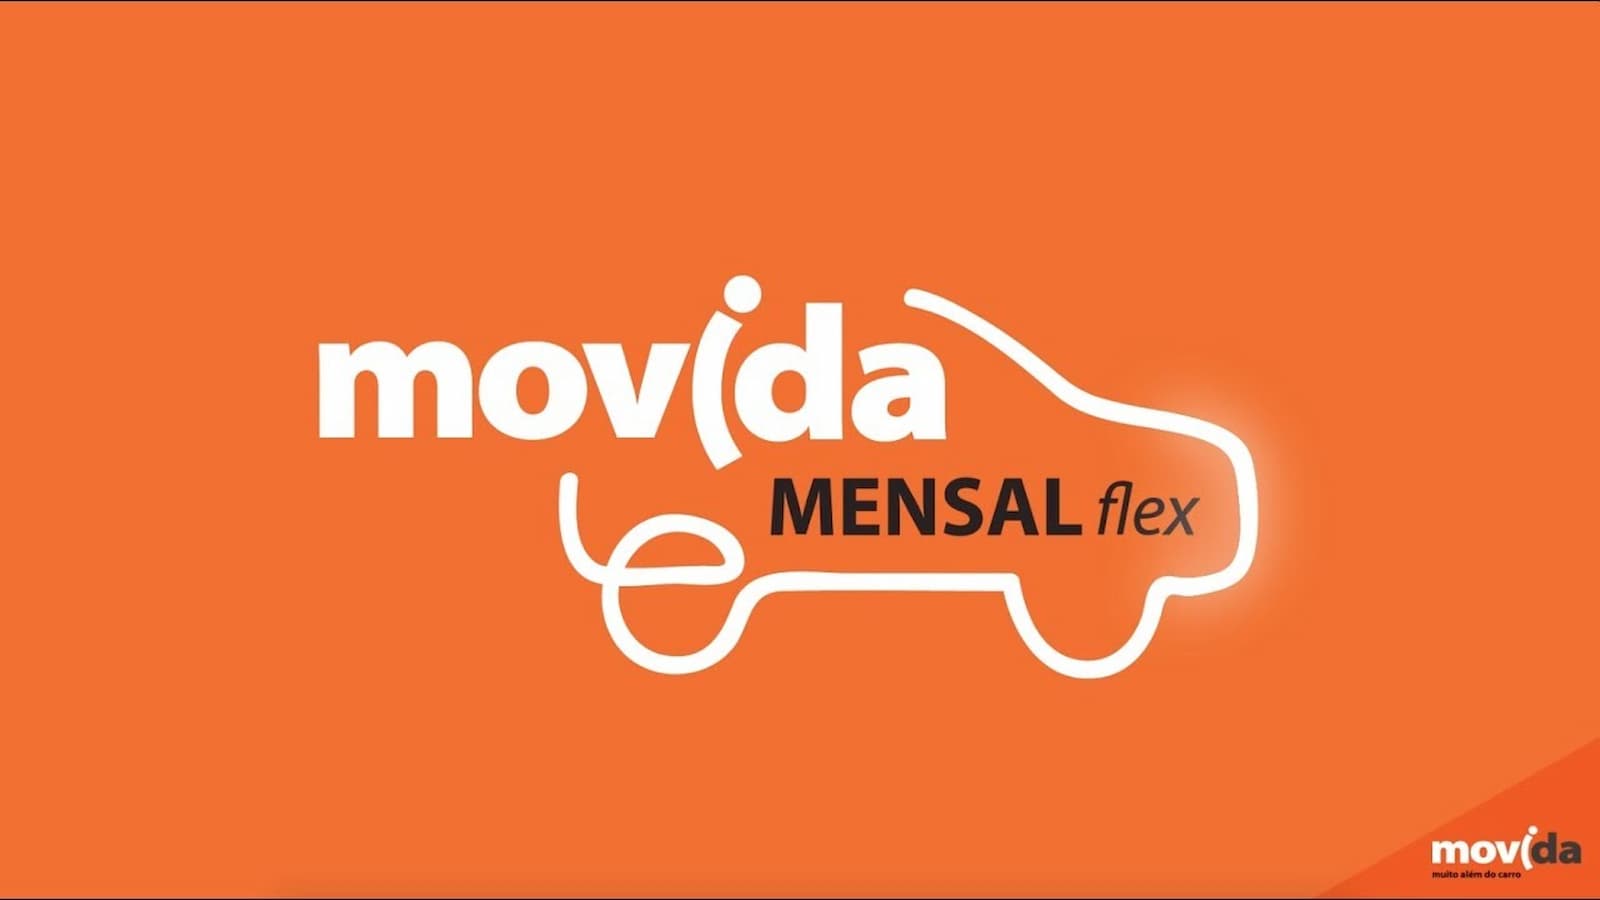 O que é a Movida Mensal Flex?